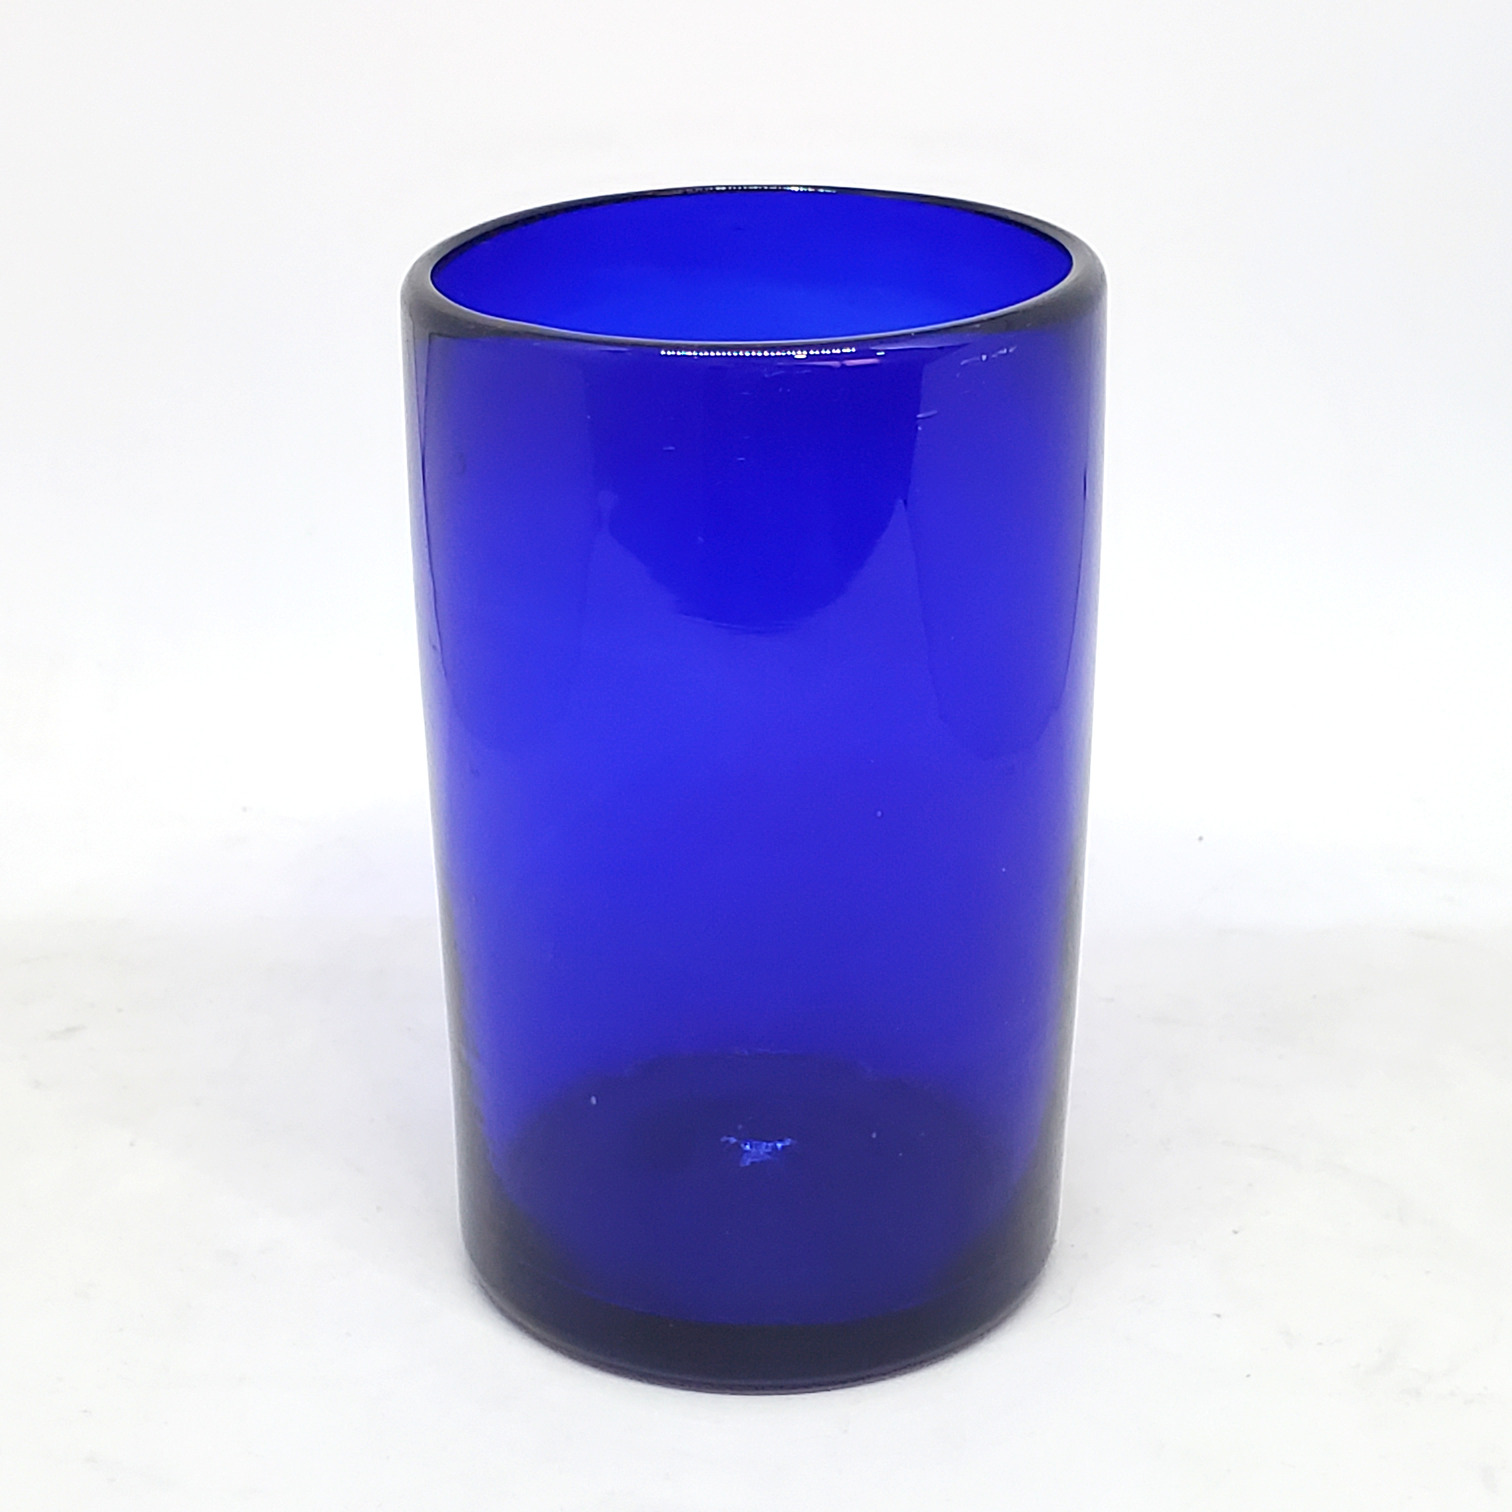 Solid Cobalt Blue 14 oz Drinking Glasses (set of 6)